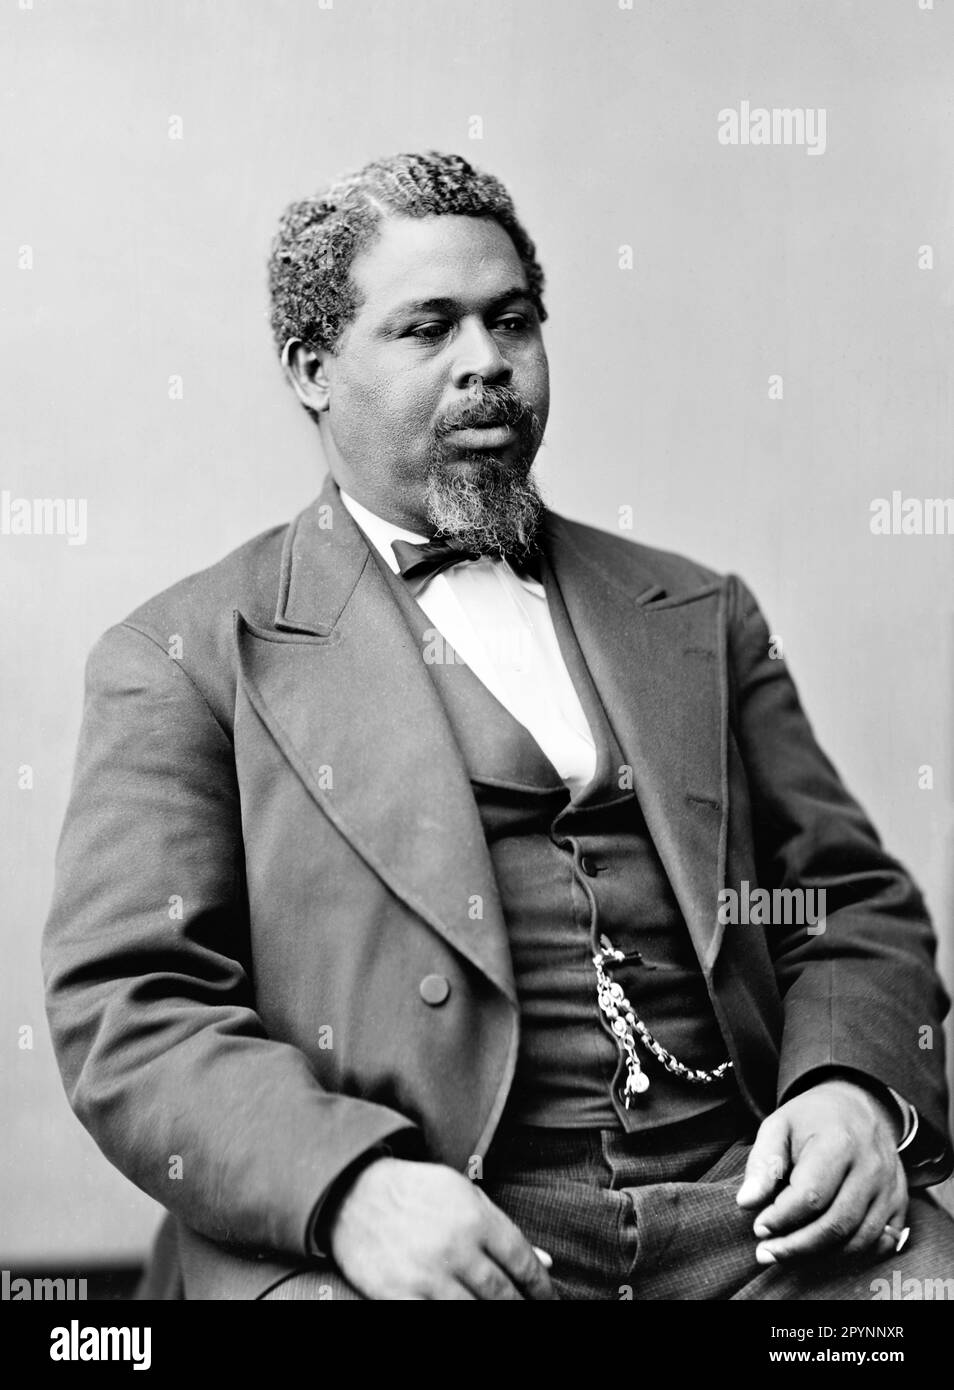 Robert Smalls. Porträt des afroamerikanischen Politikers und Geschäftsmanns, der in die Sklaverei geboren wurde, Robert Smalls (1839-1915). c. 1870-80 Stockfoto